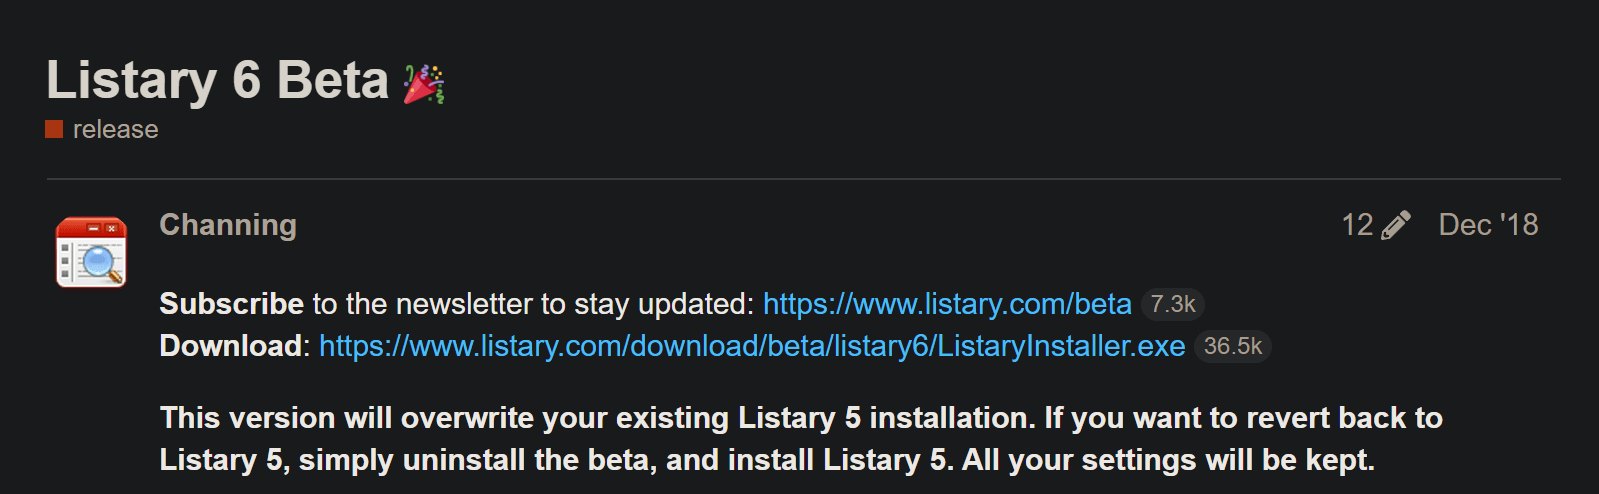 等哭了 Listary Pro 6 正式版发布 现价仅需 59 元买断-乐宝库